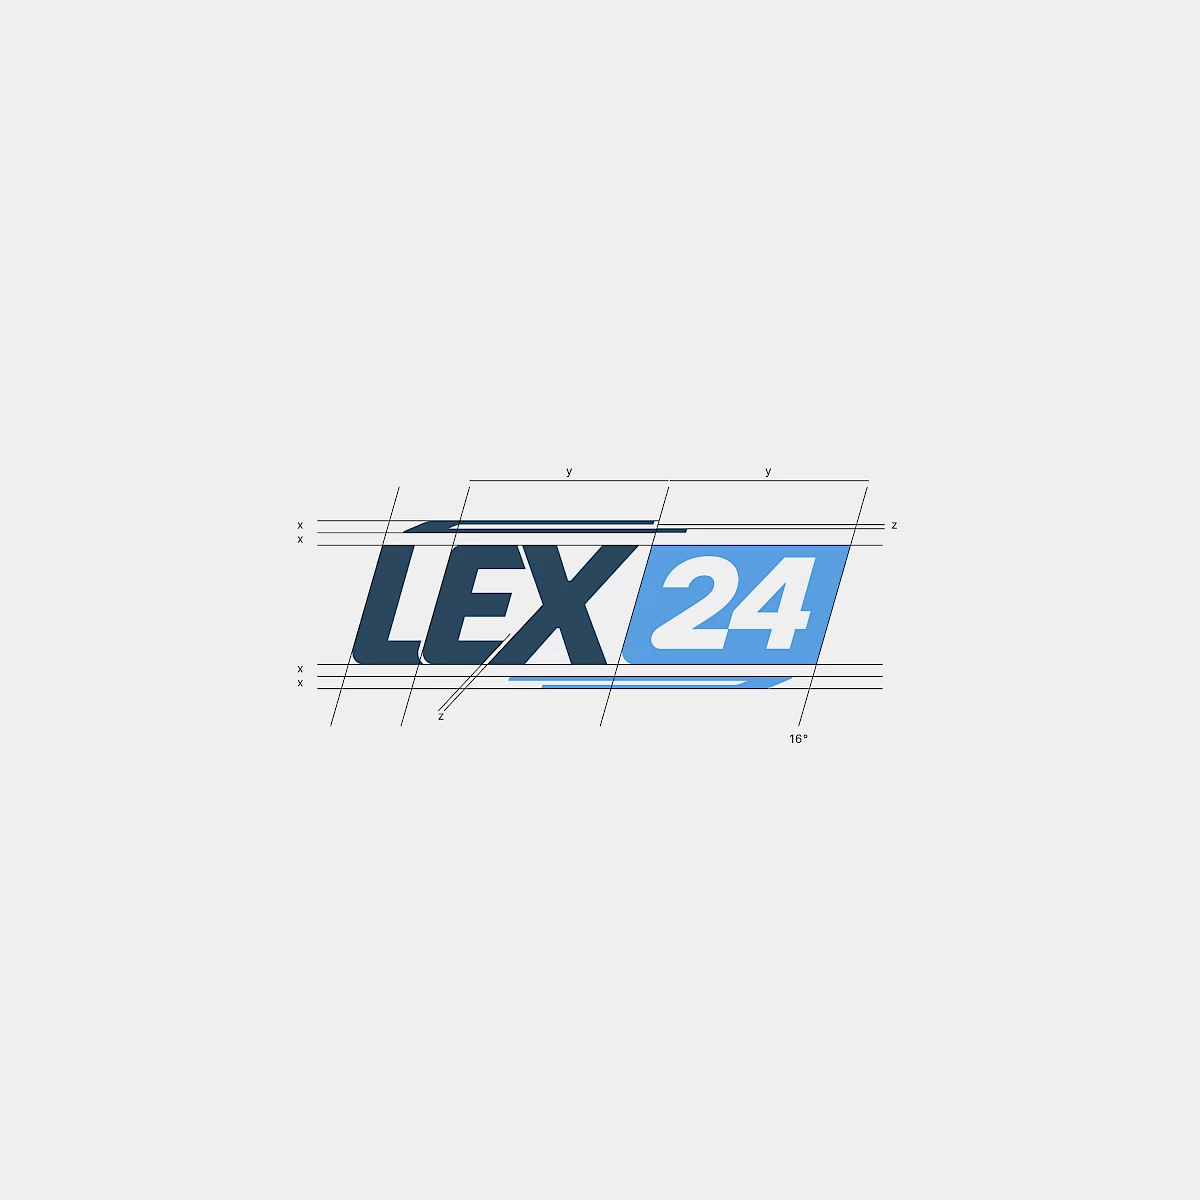 Lex24 in Mieming, Kunde und Referenz von Werbeagentur Buerostark in Telfs